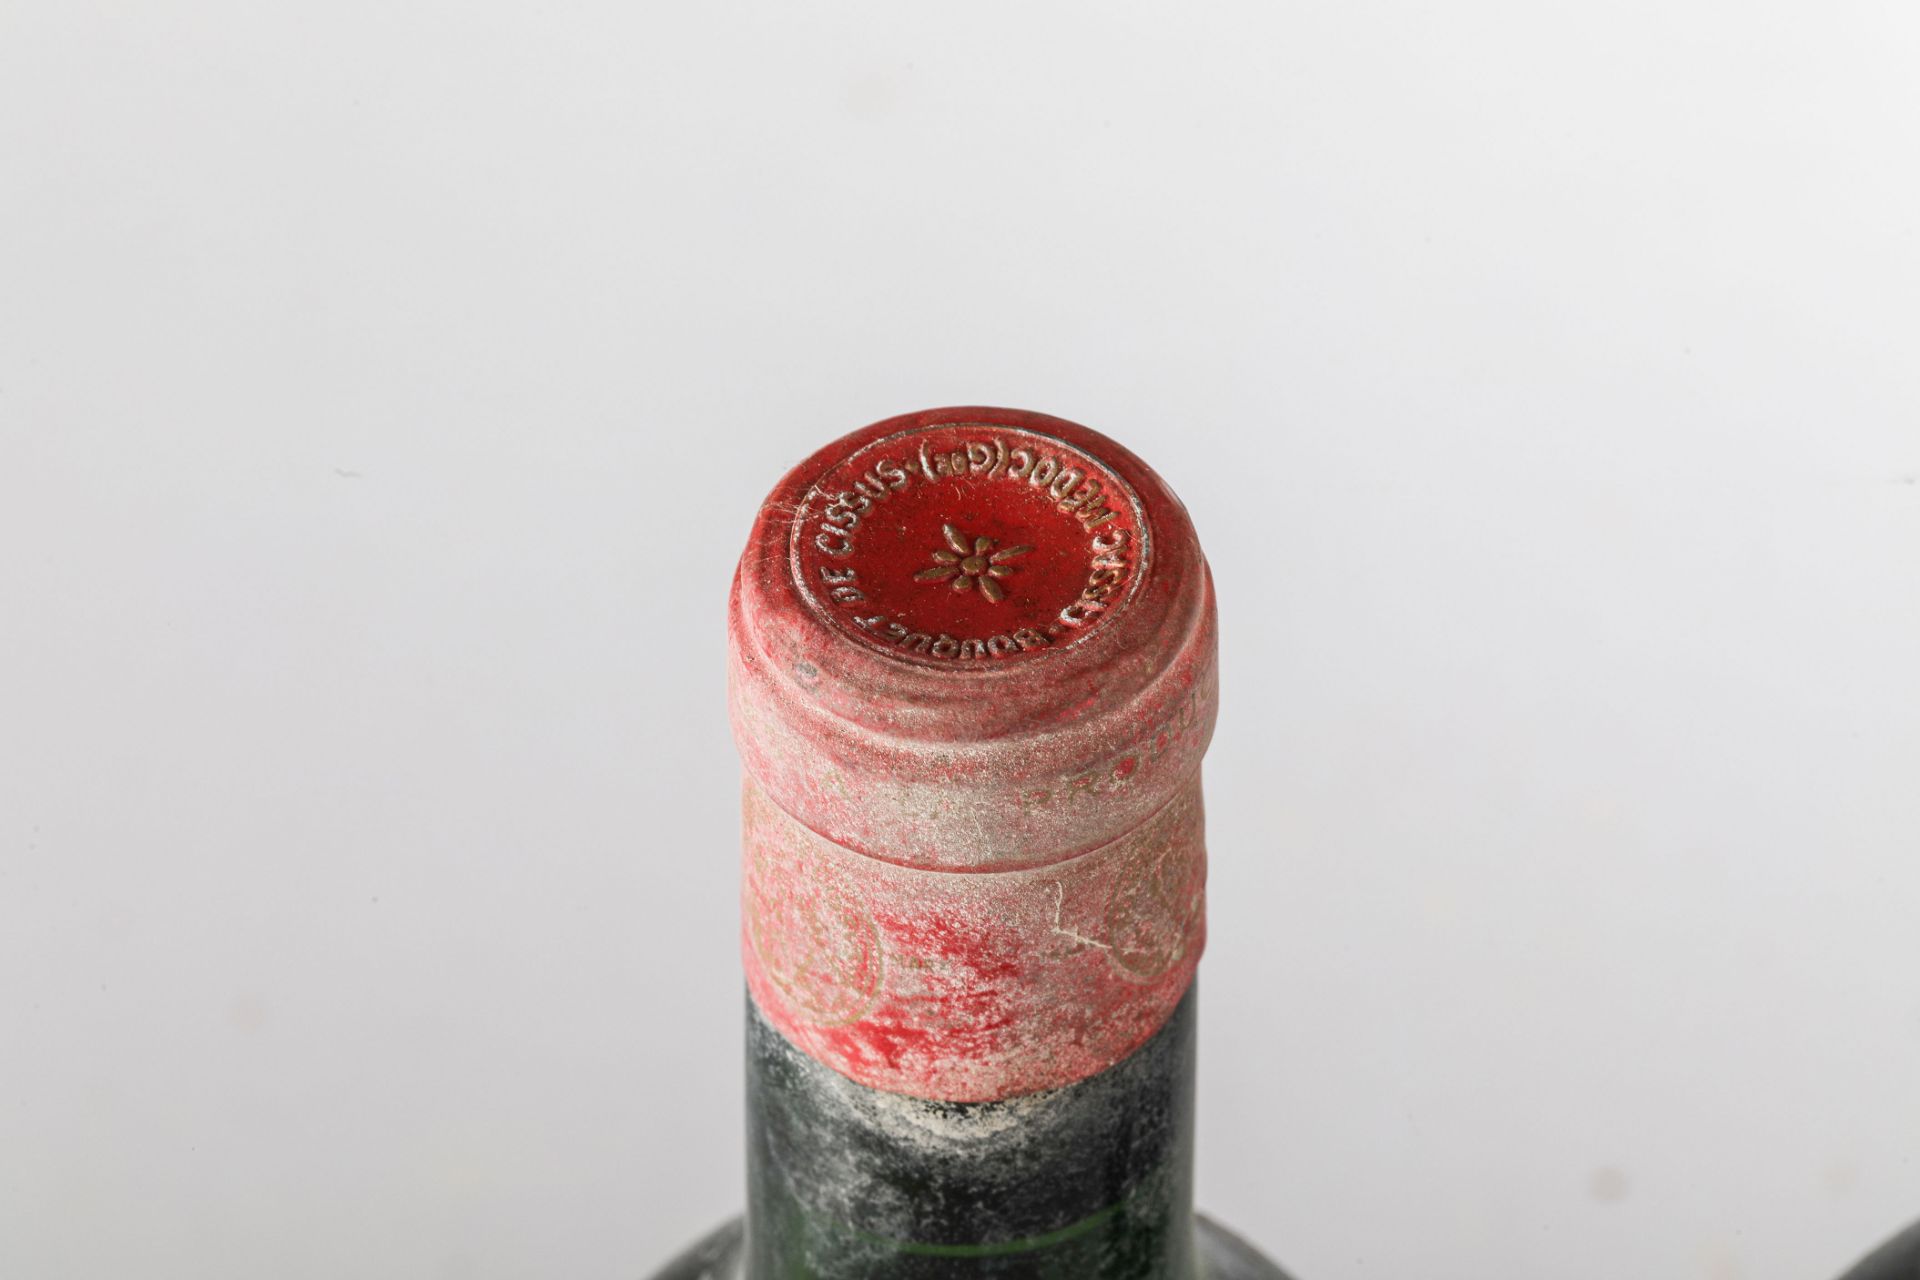 BOUQUET DE CISSUS 19643 bouteilles Haut Medoc - Image 3 of 3